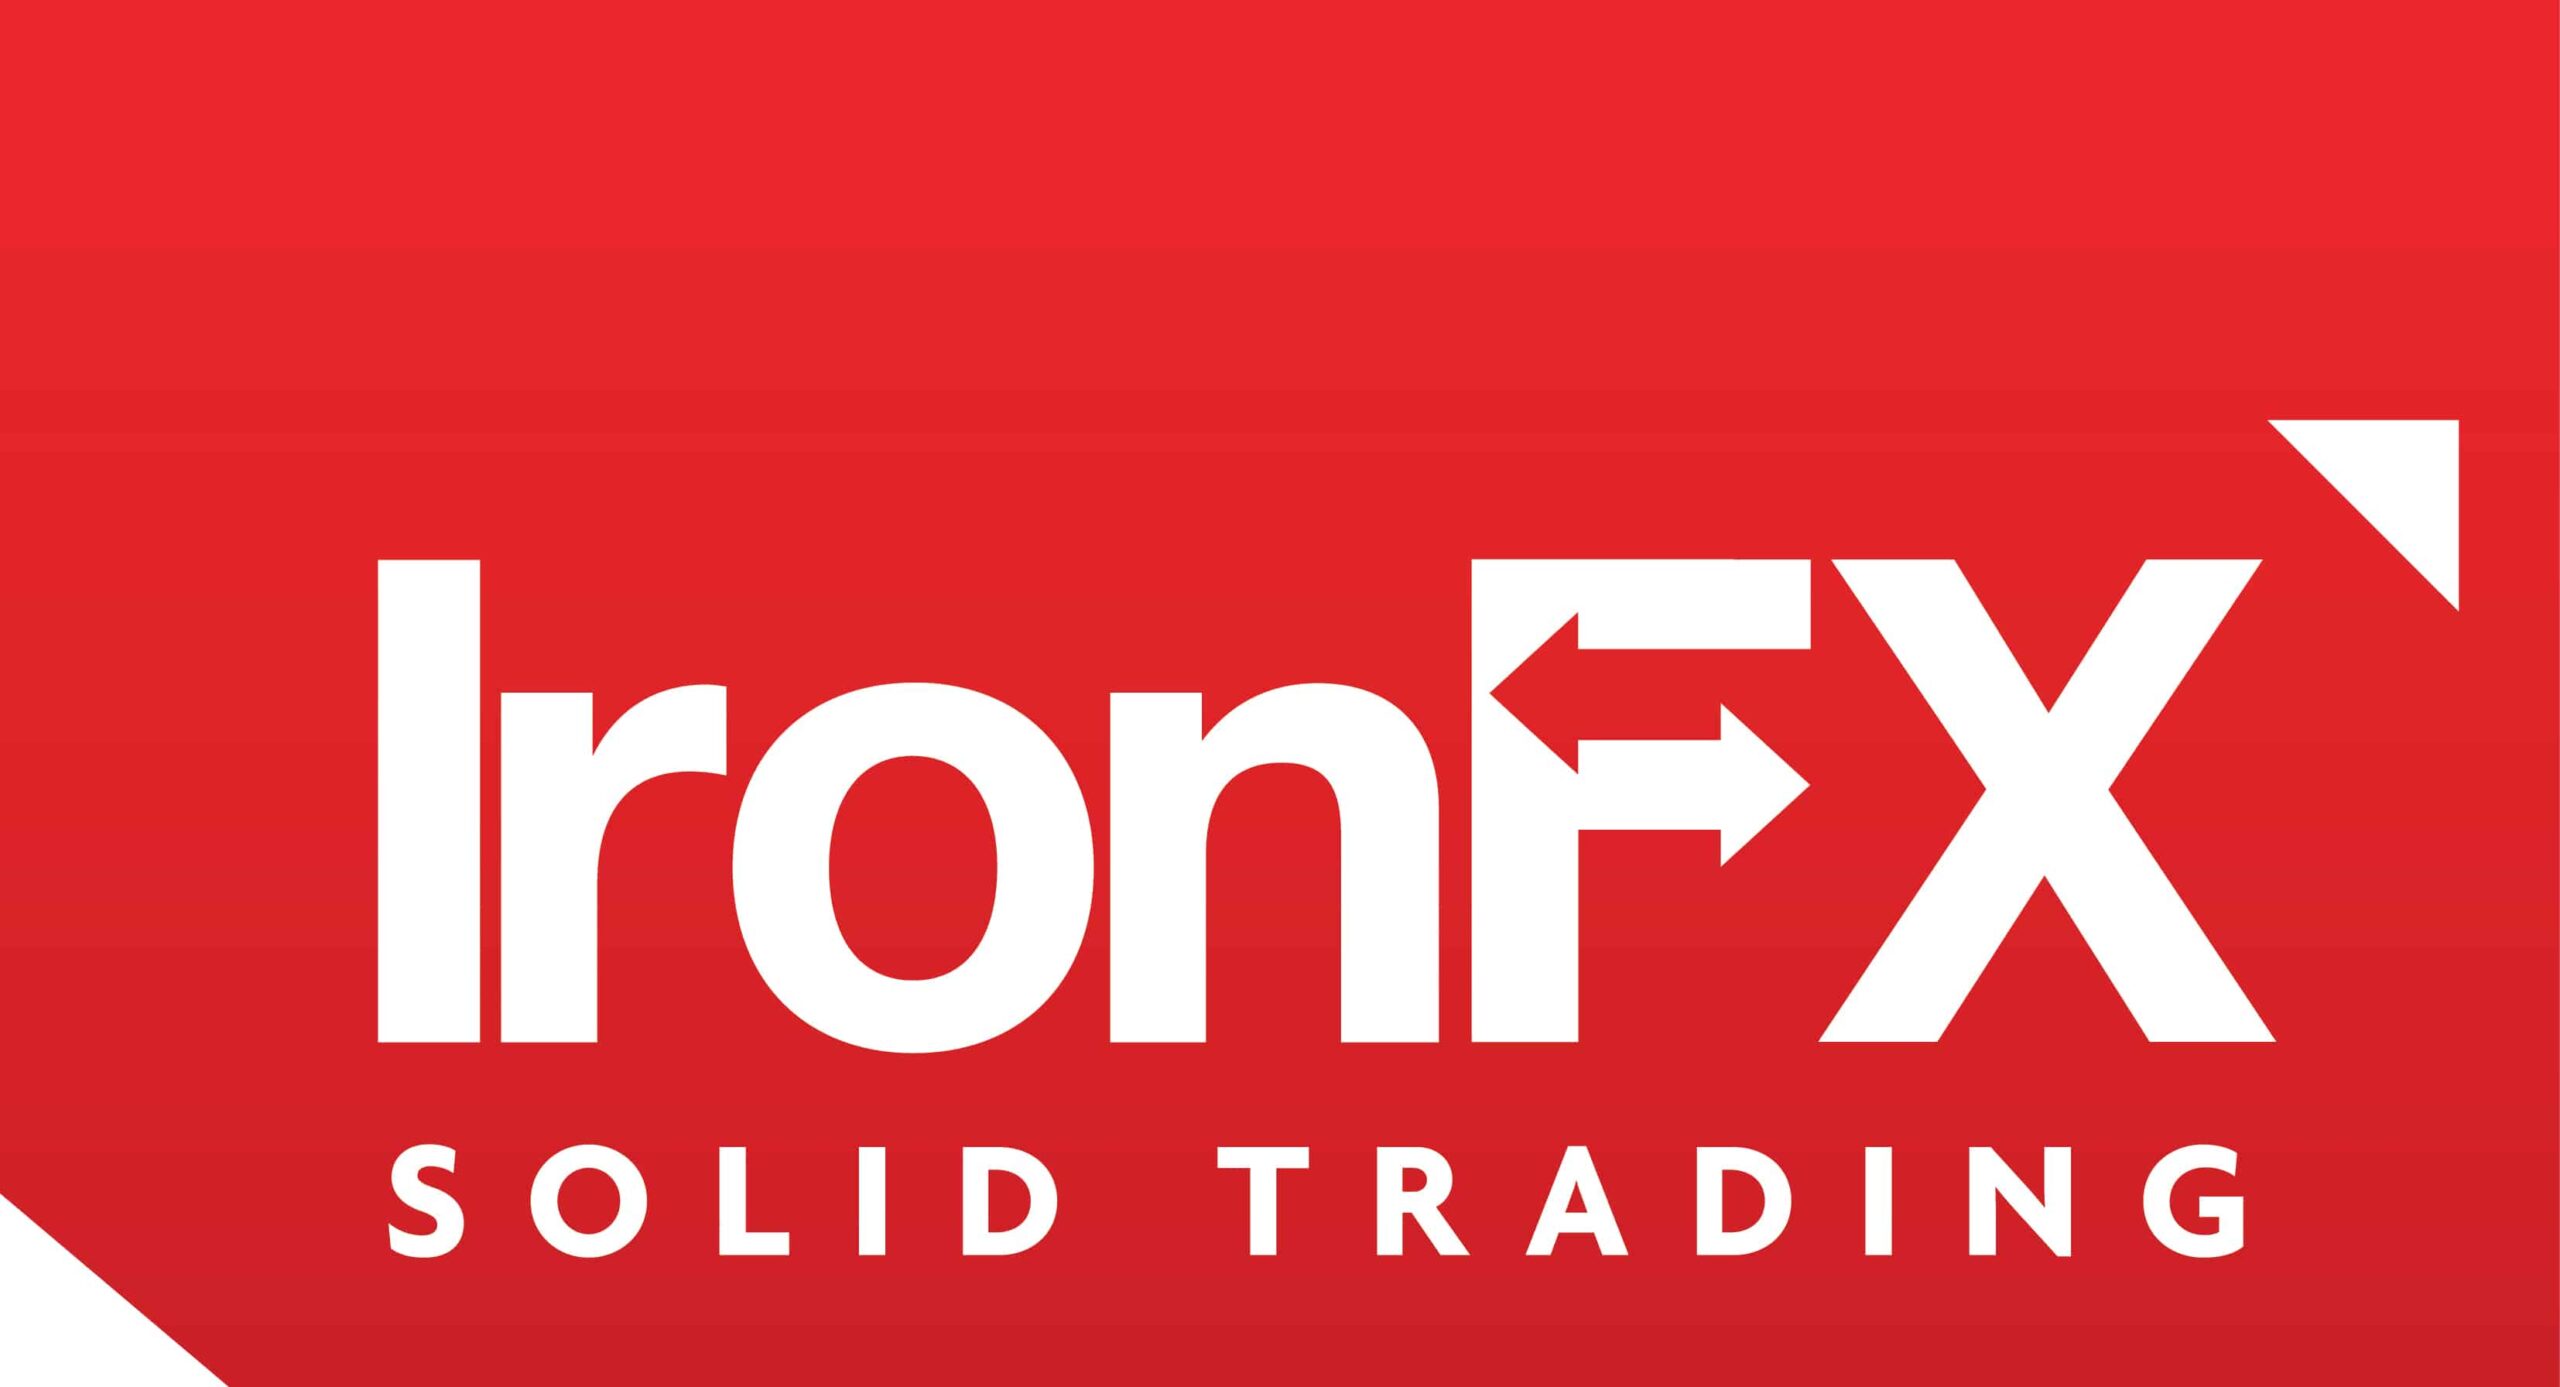 Revisão da IronFX broker – O trading com a IronFX MT4 e MT5 é confiável?